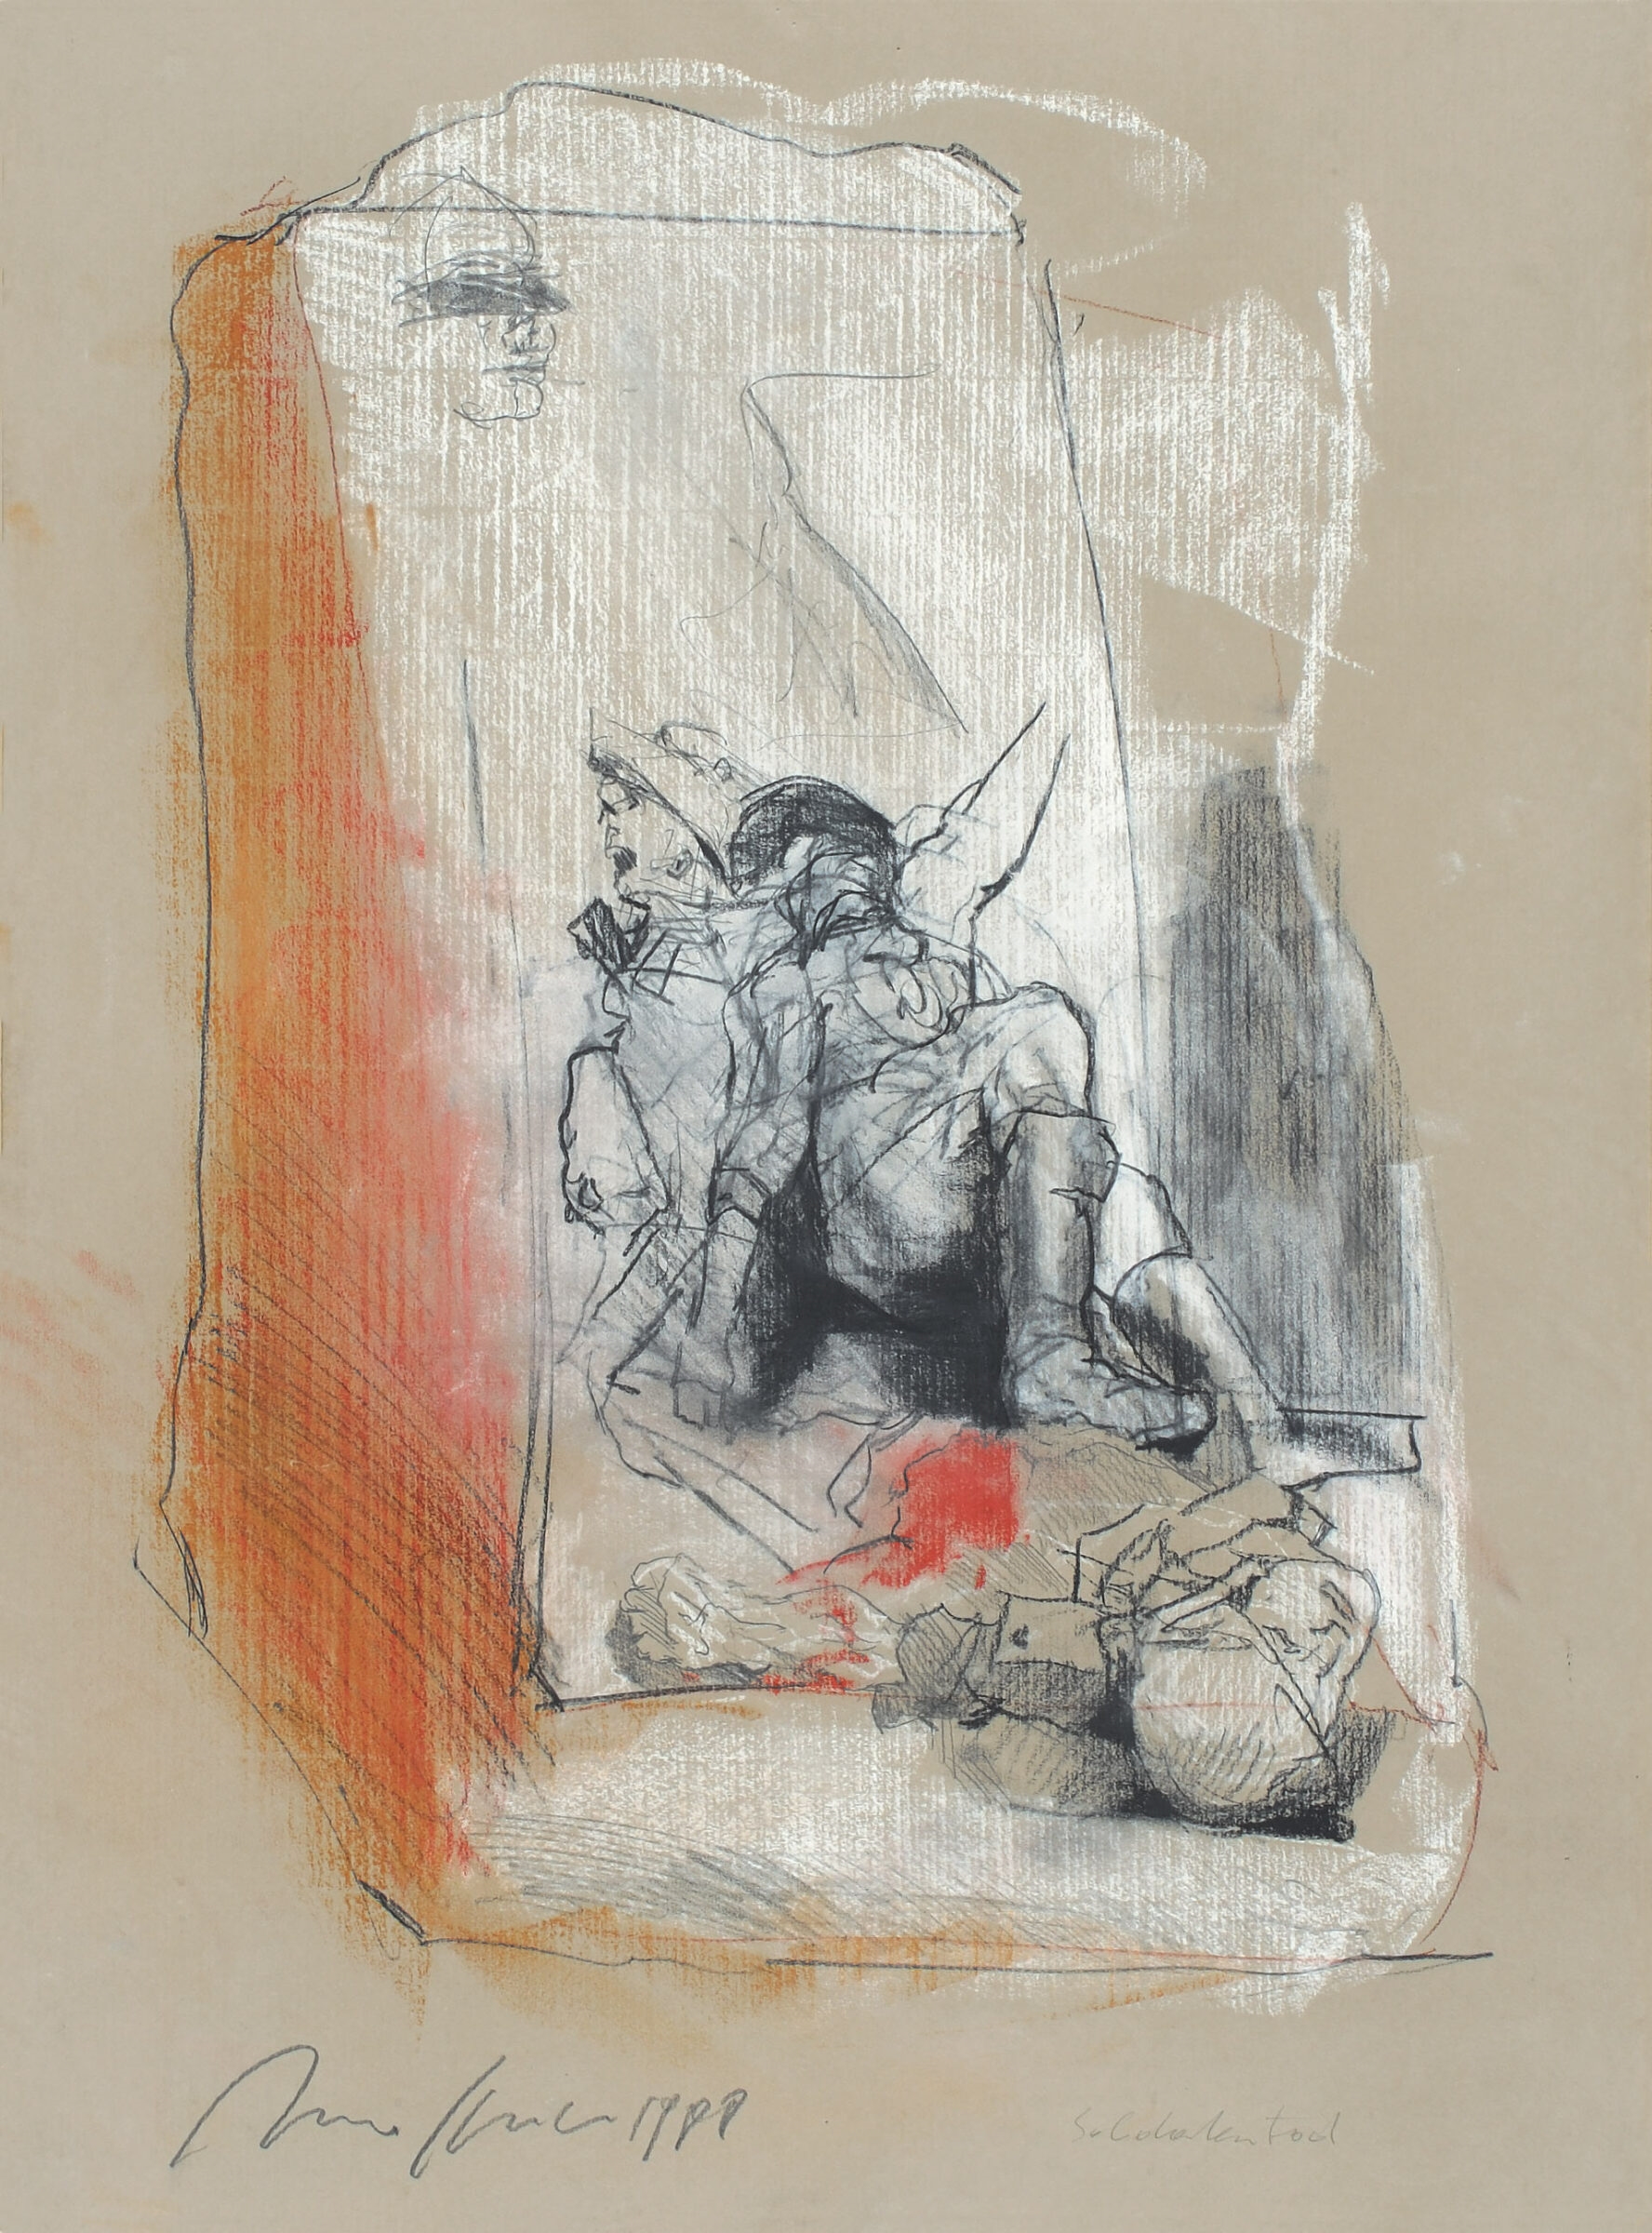 Soldatentod. Pastell, Kohle u. Bleistift auf grauem Bütten. 1988. 67,2 x 49 cm, unter Passepartout. Unter Glas gerahmt - Alfred Hrdlicka